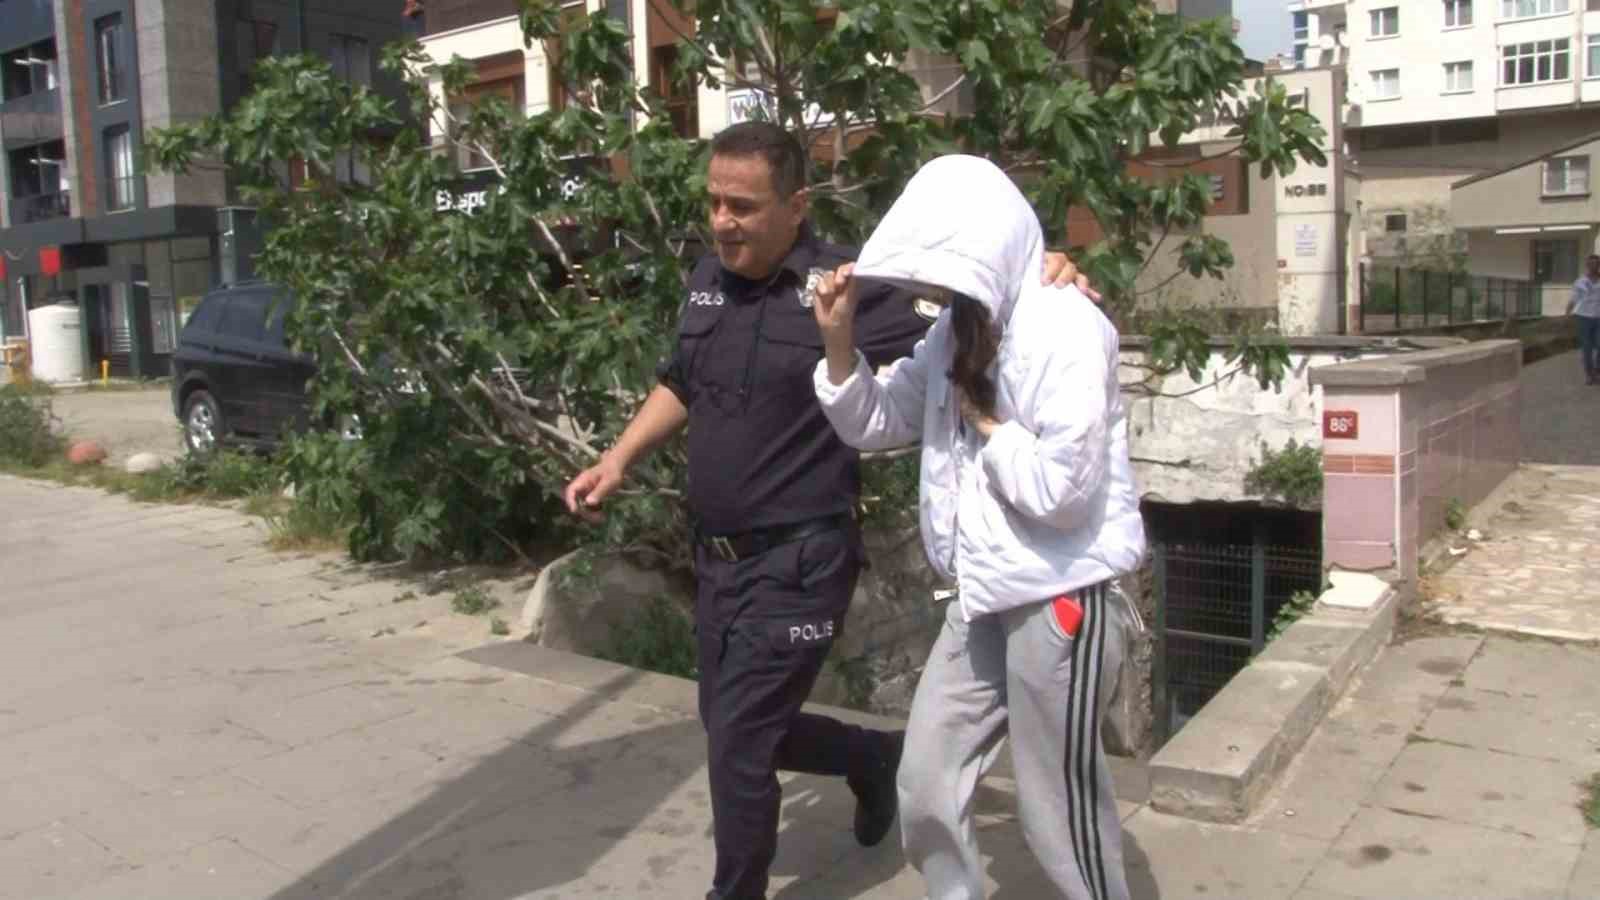 Kartal’da uyuşturucu kullanan gençler arasında kavga: 1 kız, 3 erkek gözaltına alındı
